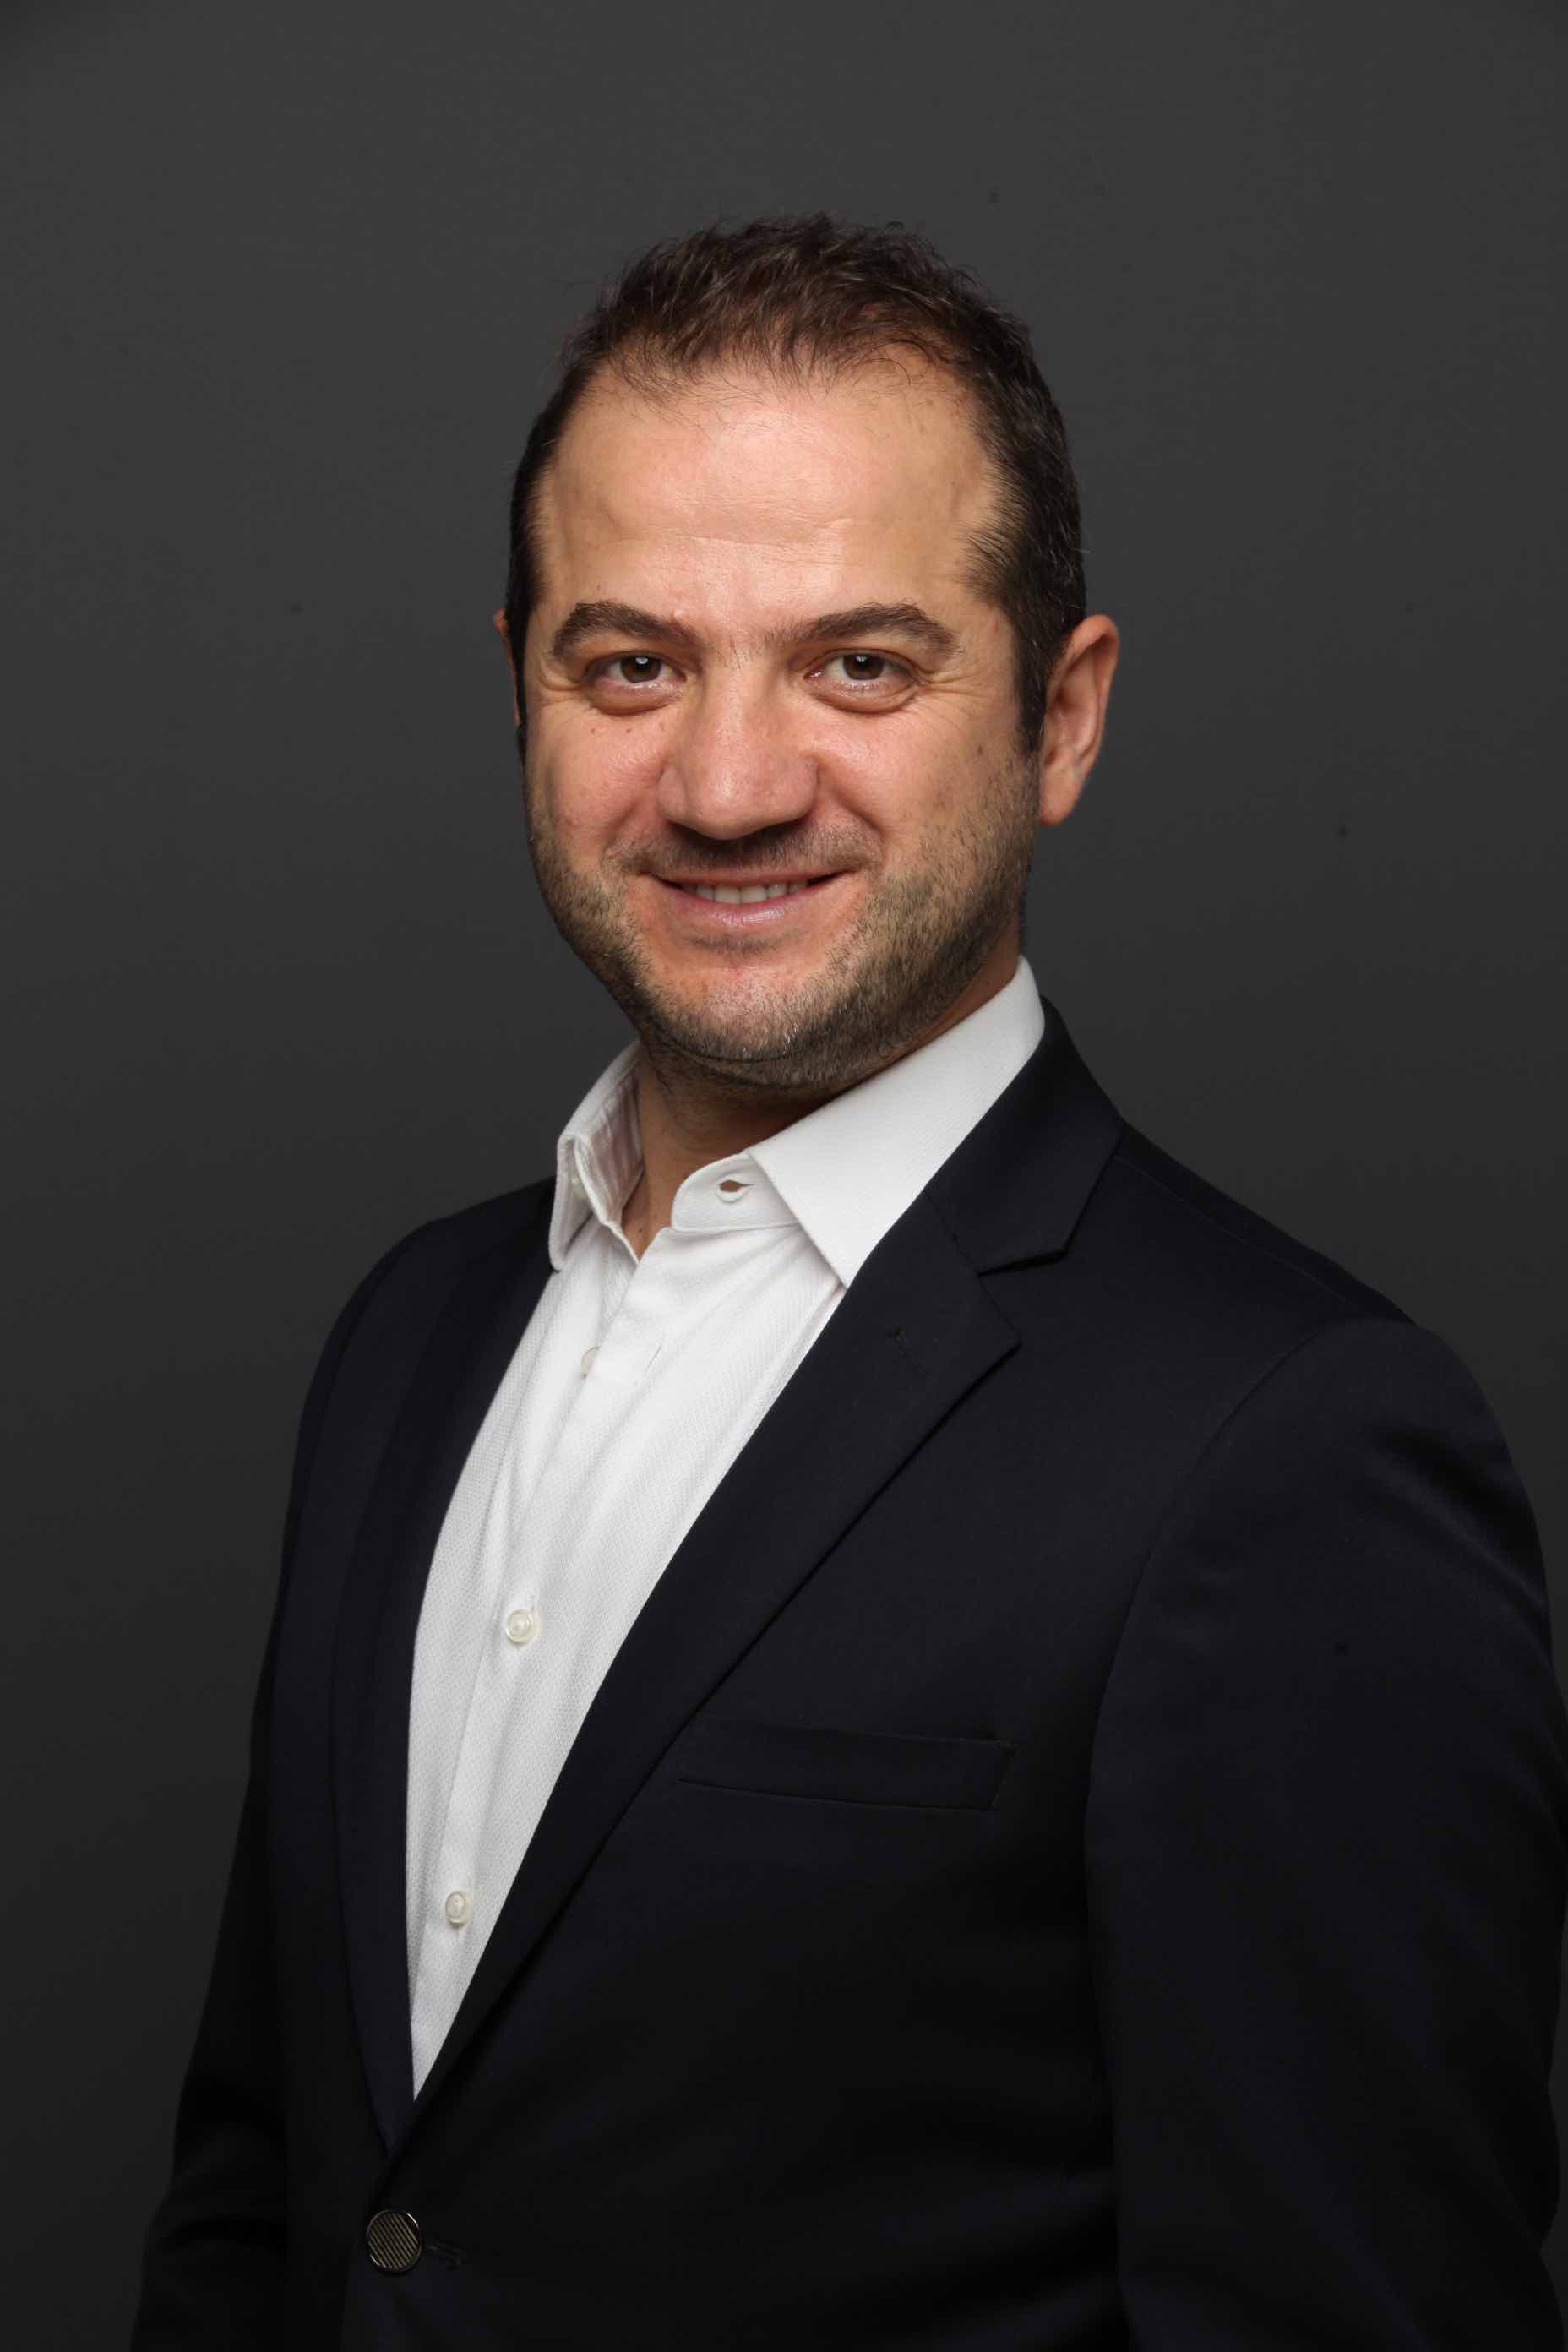 Meal Box CEO Murat Demirhan